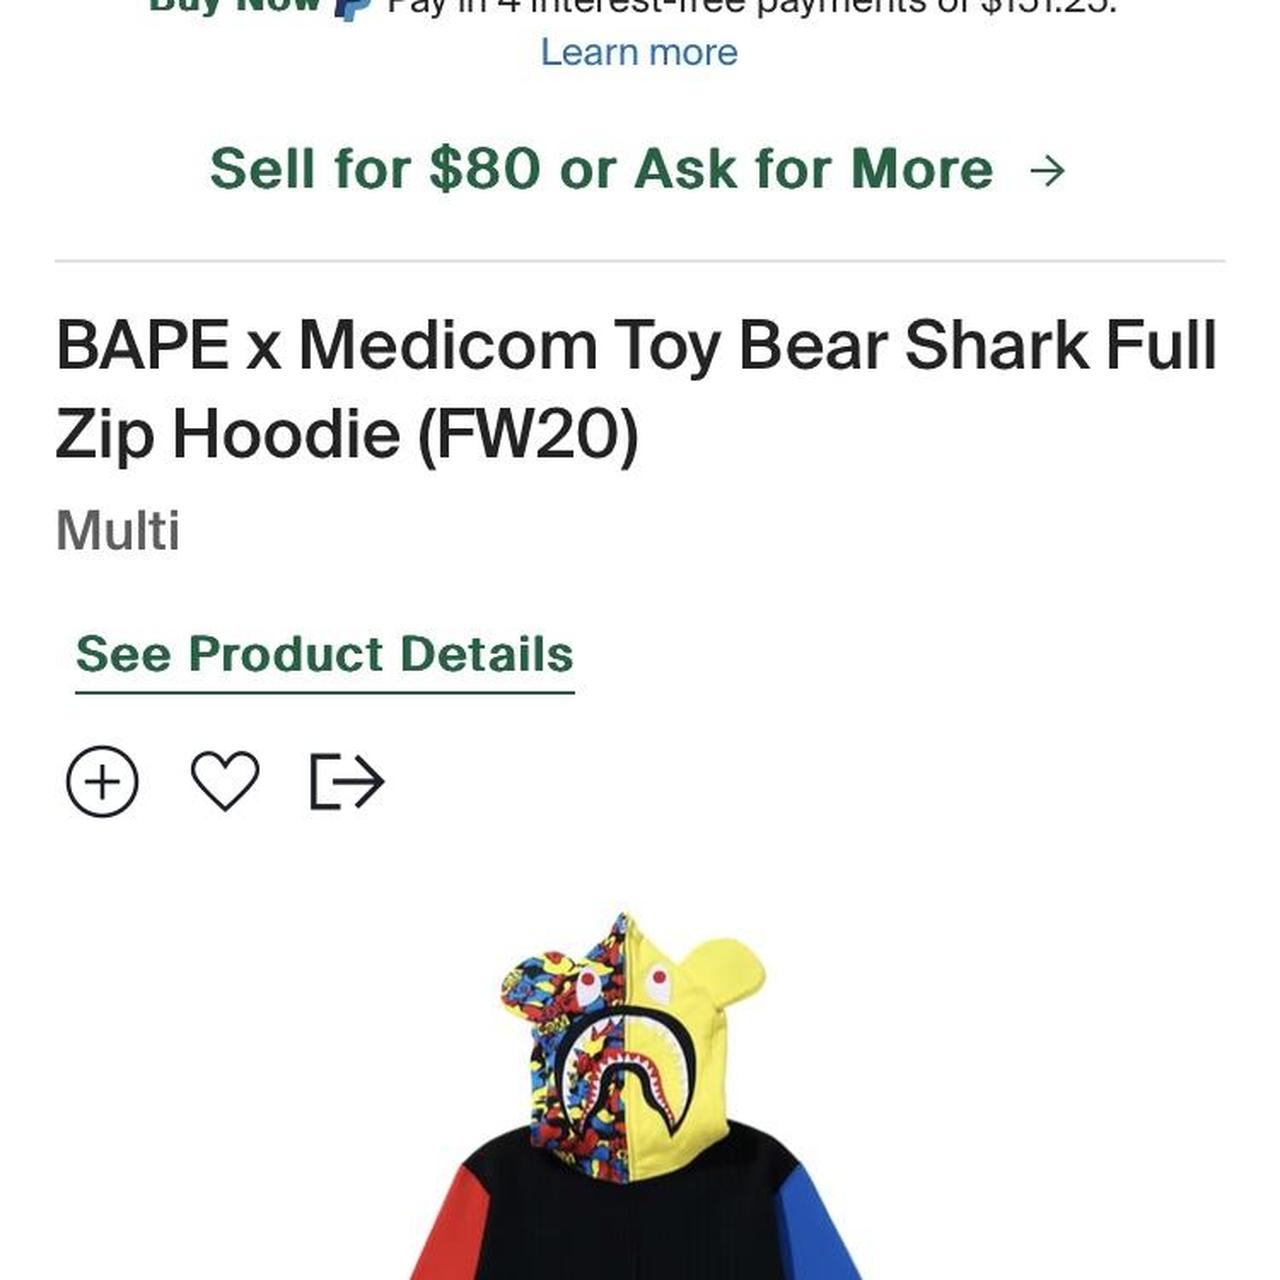 Bape Medicom Toy Bear Shark Full Zip Hoodie